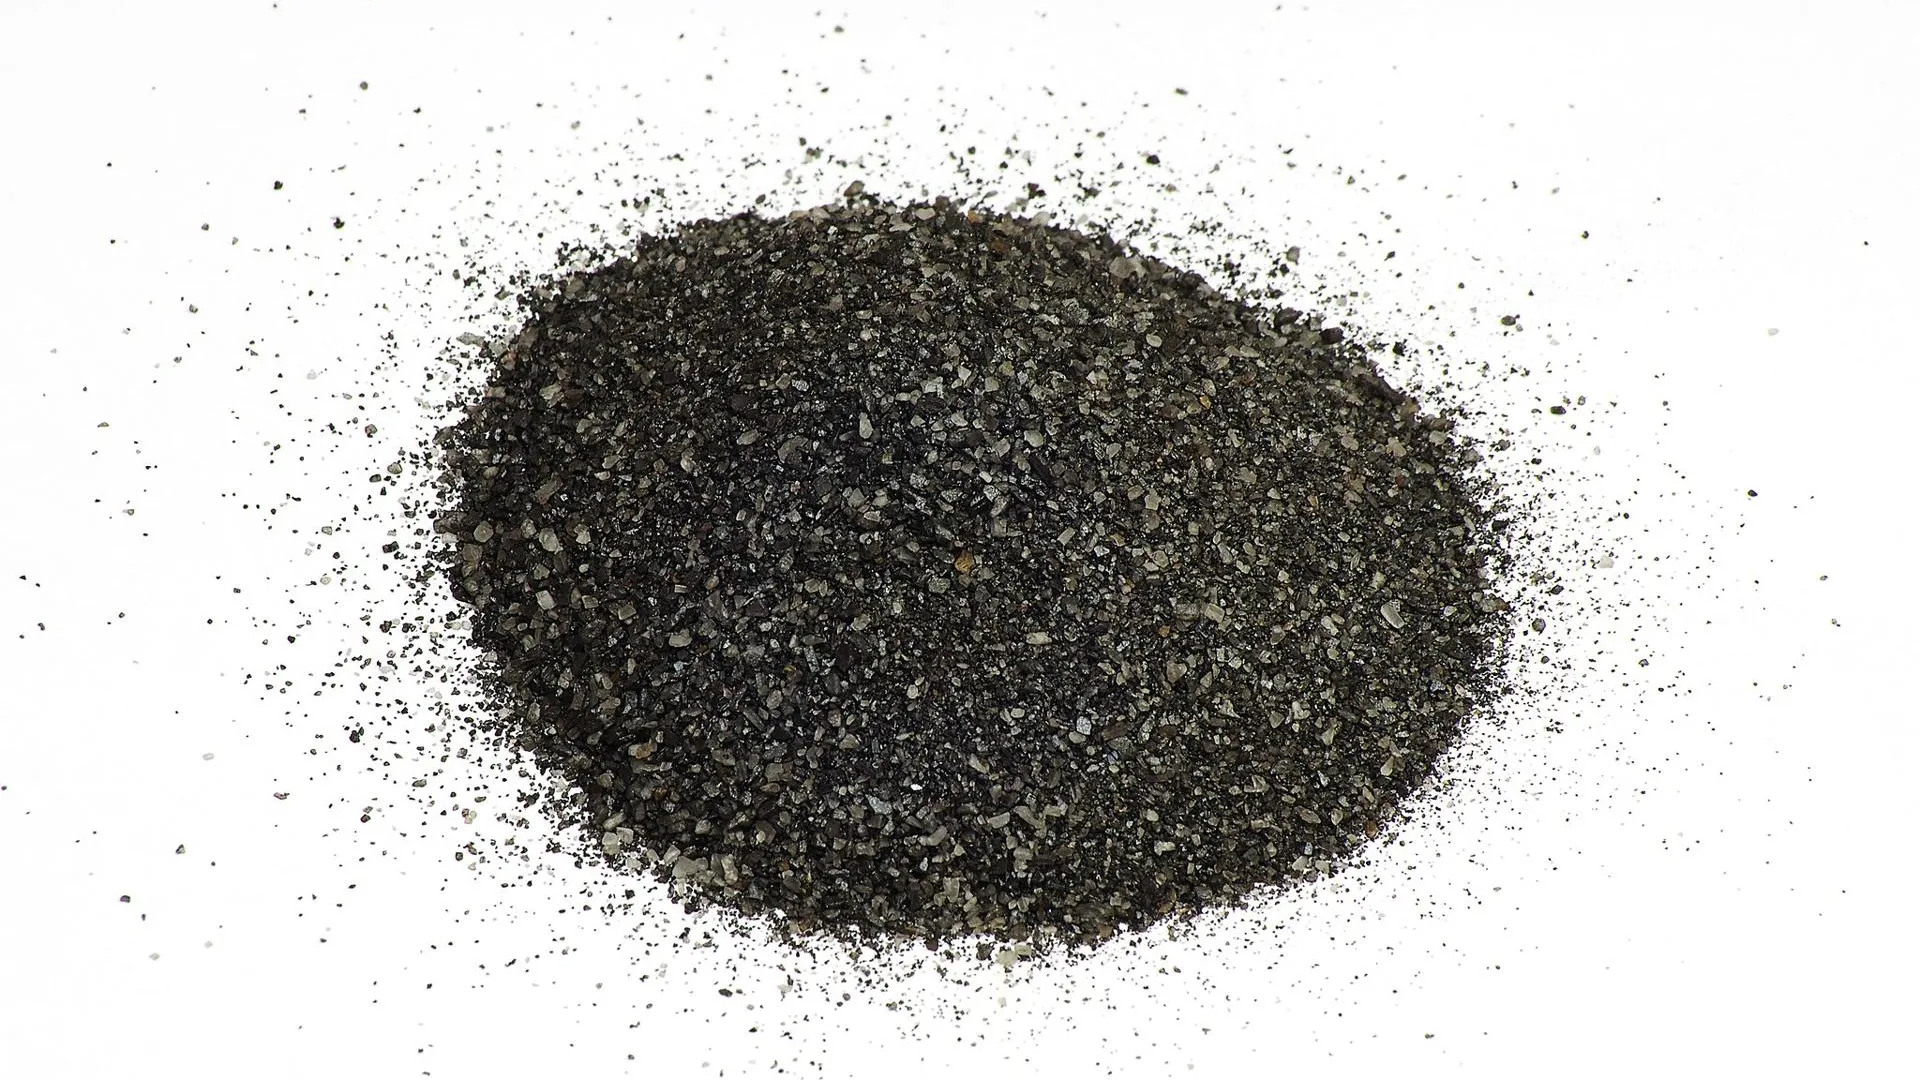 Четверговая (черная) соль после помола